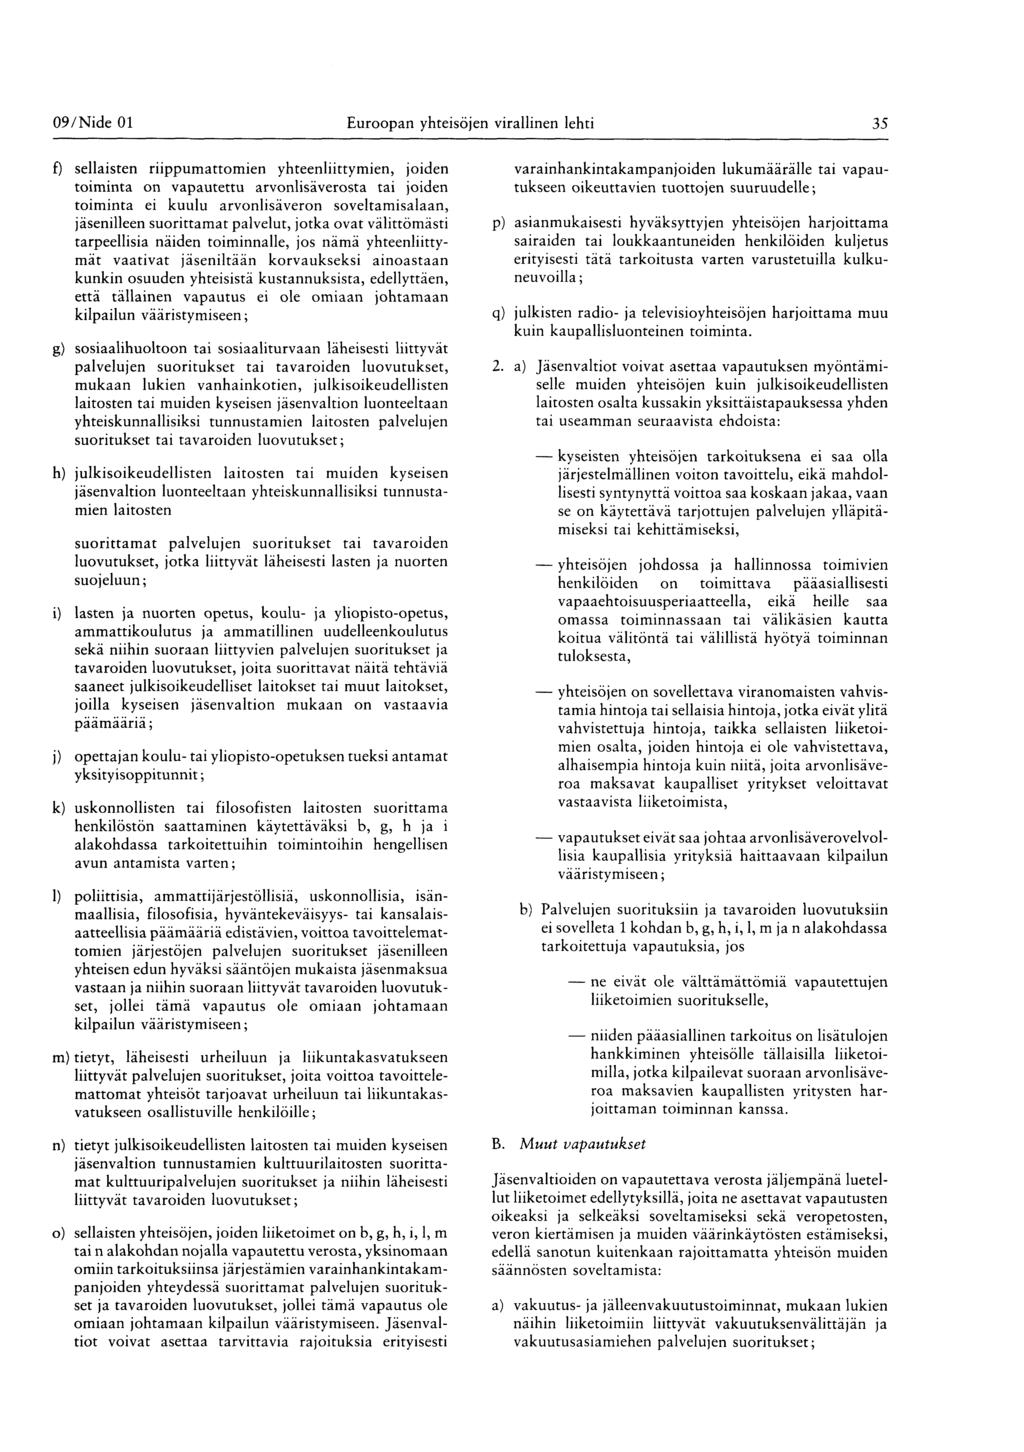 09/ Nide 01 Euroopan yhteisöjen virallinen lehti 35 f) sellaisten riippumattomien yhteenliittymien, joiden toiminta on vapautettu arvonlisäverosta tai joiden toiminta ei kuulu arvonlisäveron